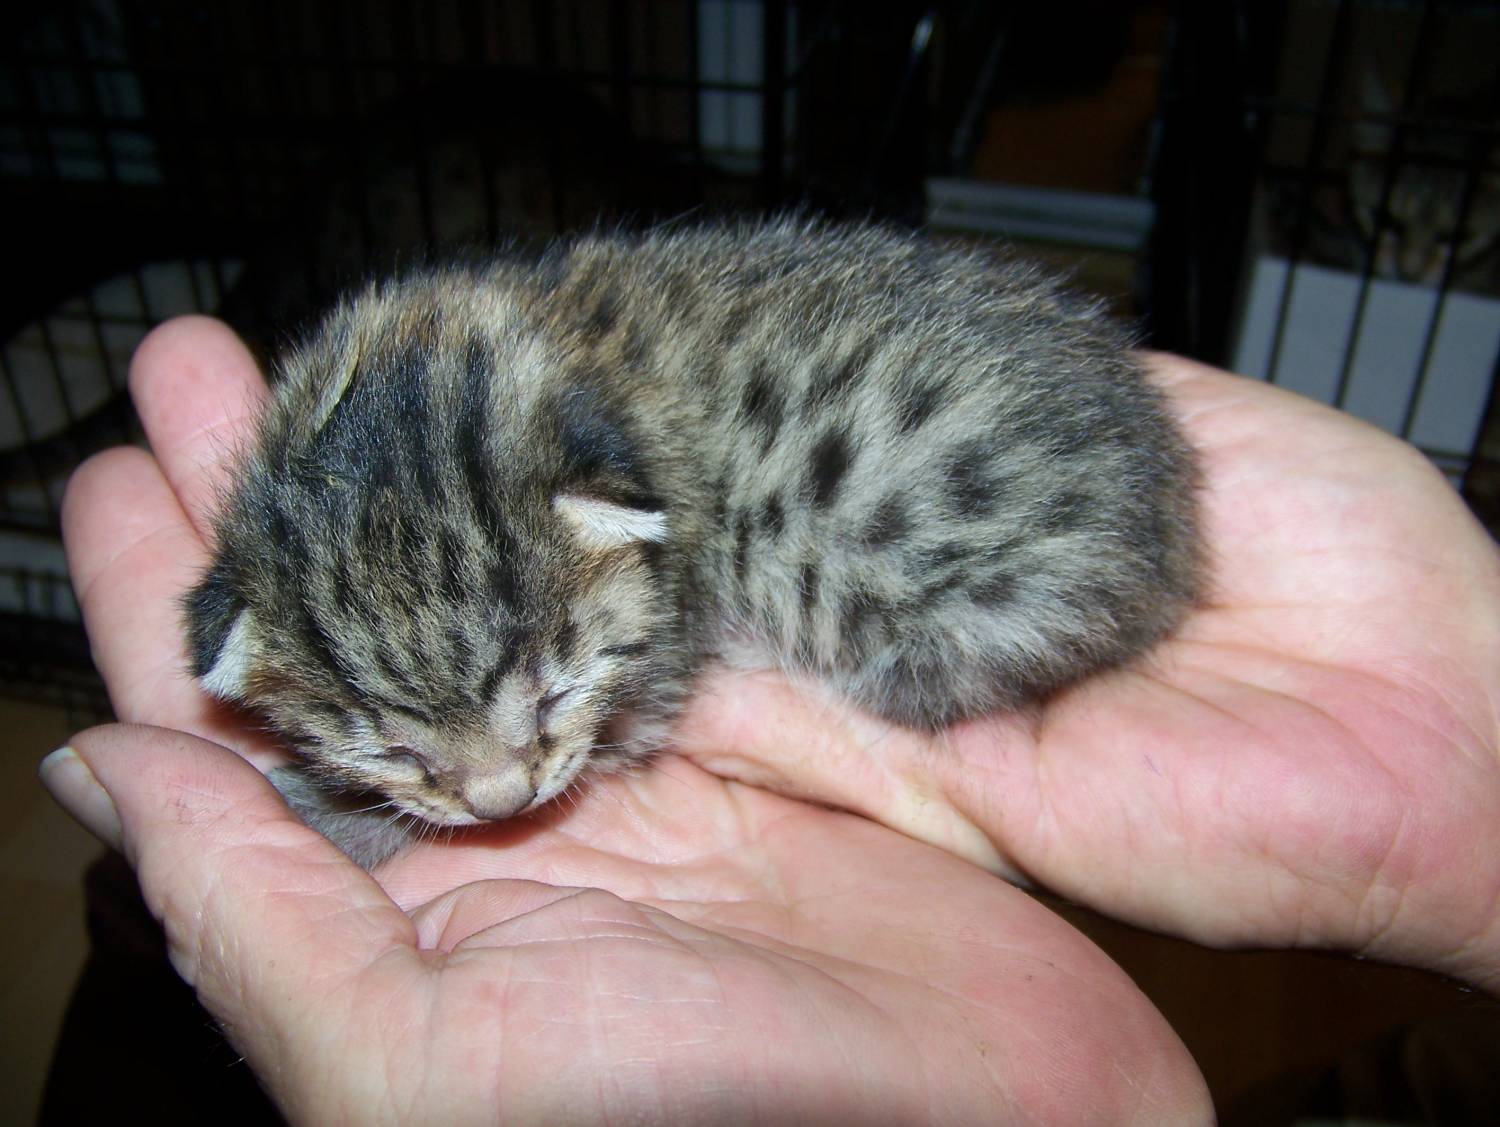 Het kleine katje van de Egyptische Mau op de handpalmen